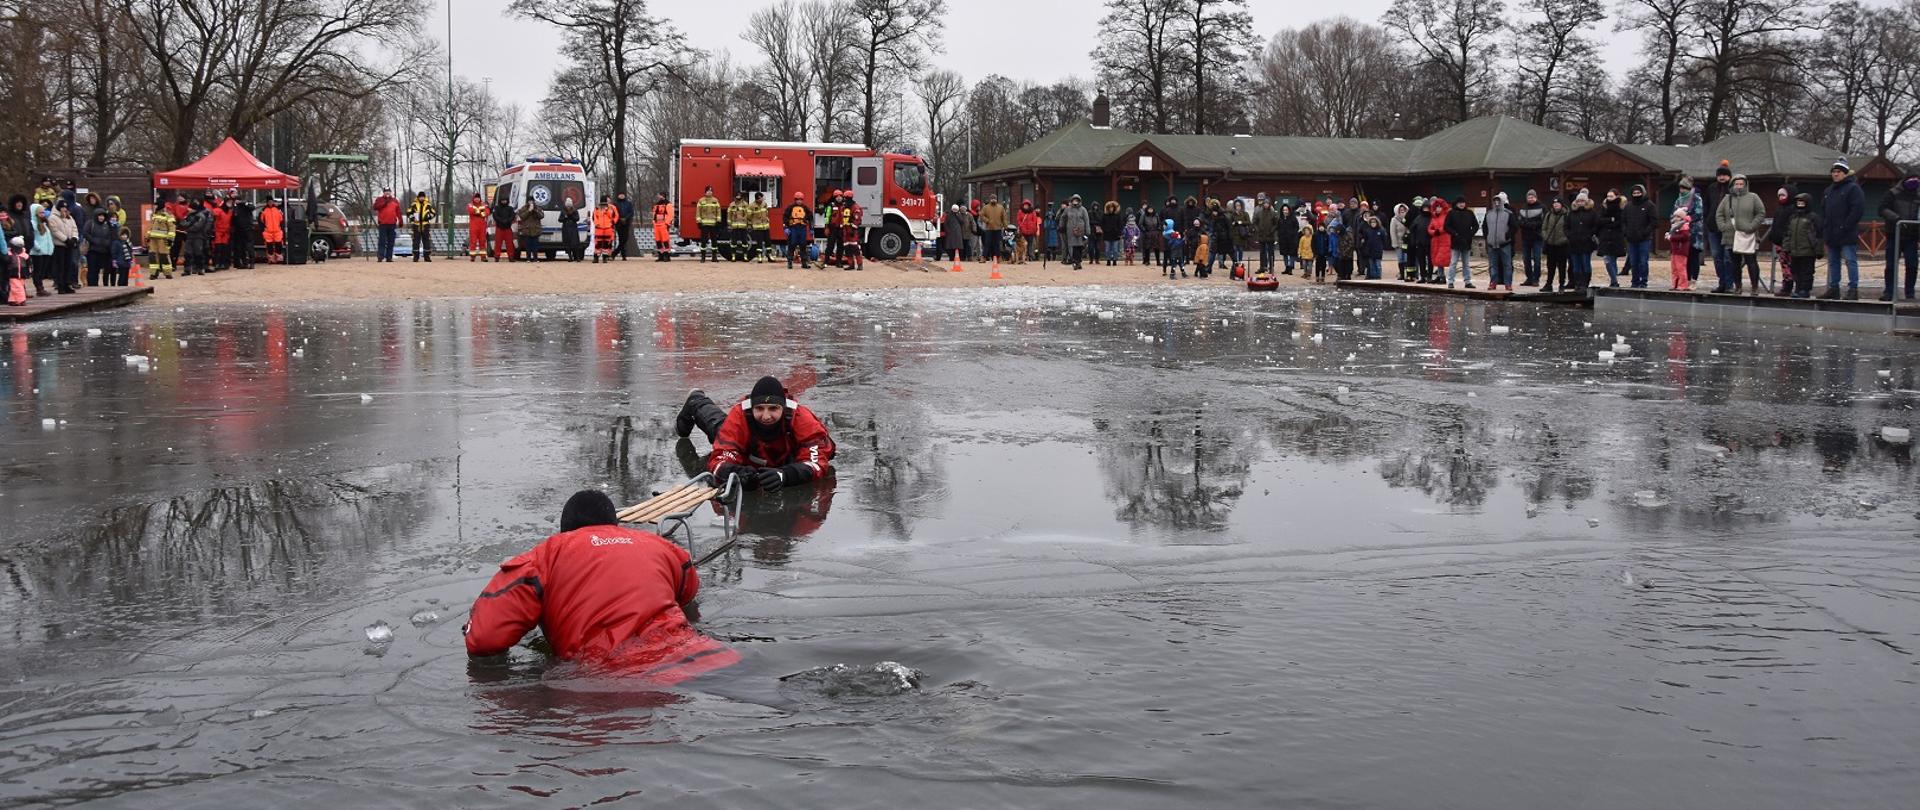 Zdjęcie obrazuje osobę w wodzie a druga będąc na lodzie ją ratuje podając sanki w tle ludzie i samochody